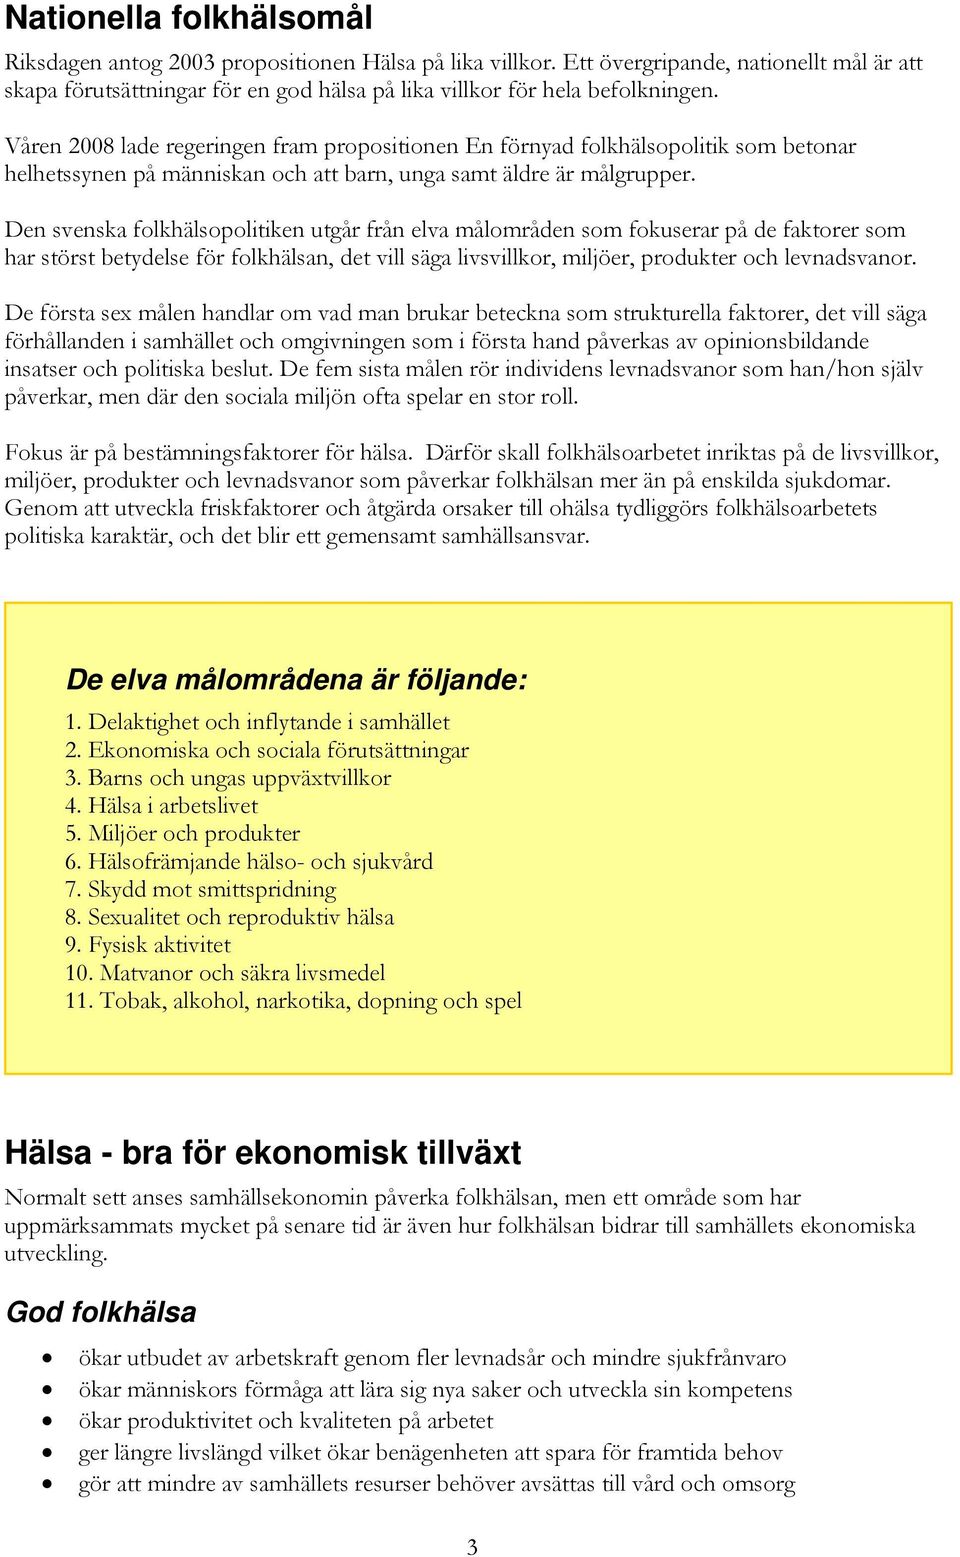 Den svenska folkhälsopolitiken utgår från elva målområden som fokuserar på de faktorer som har störst betydelse för folkhälsan, det vill säga livsvillkor, miljöer, produkter och levnadsvanor.